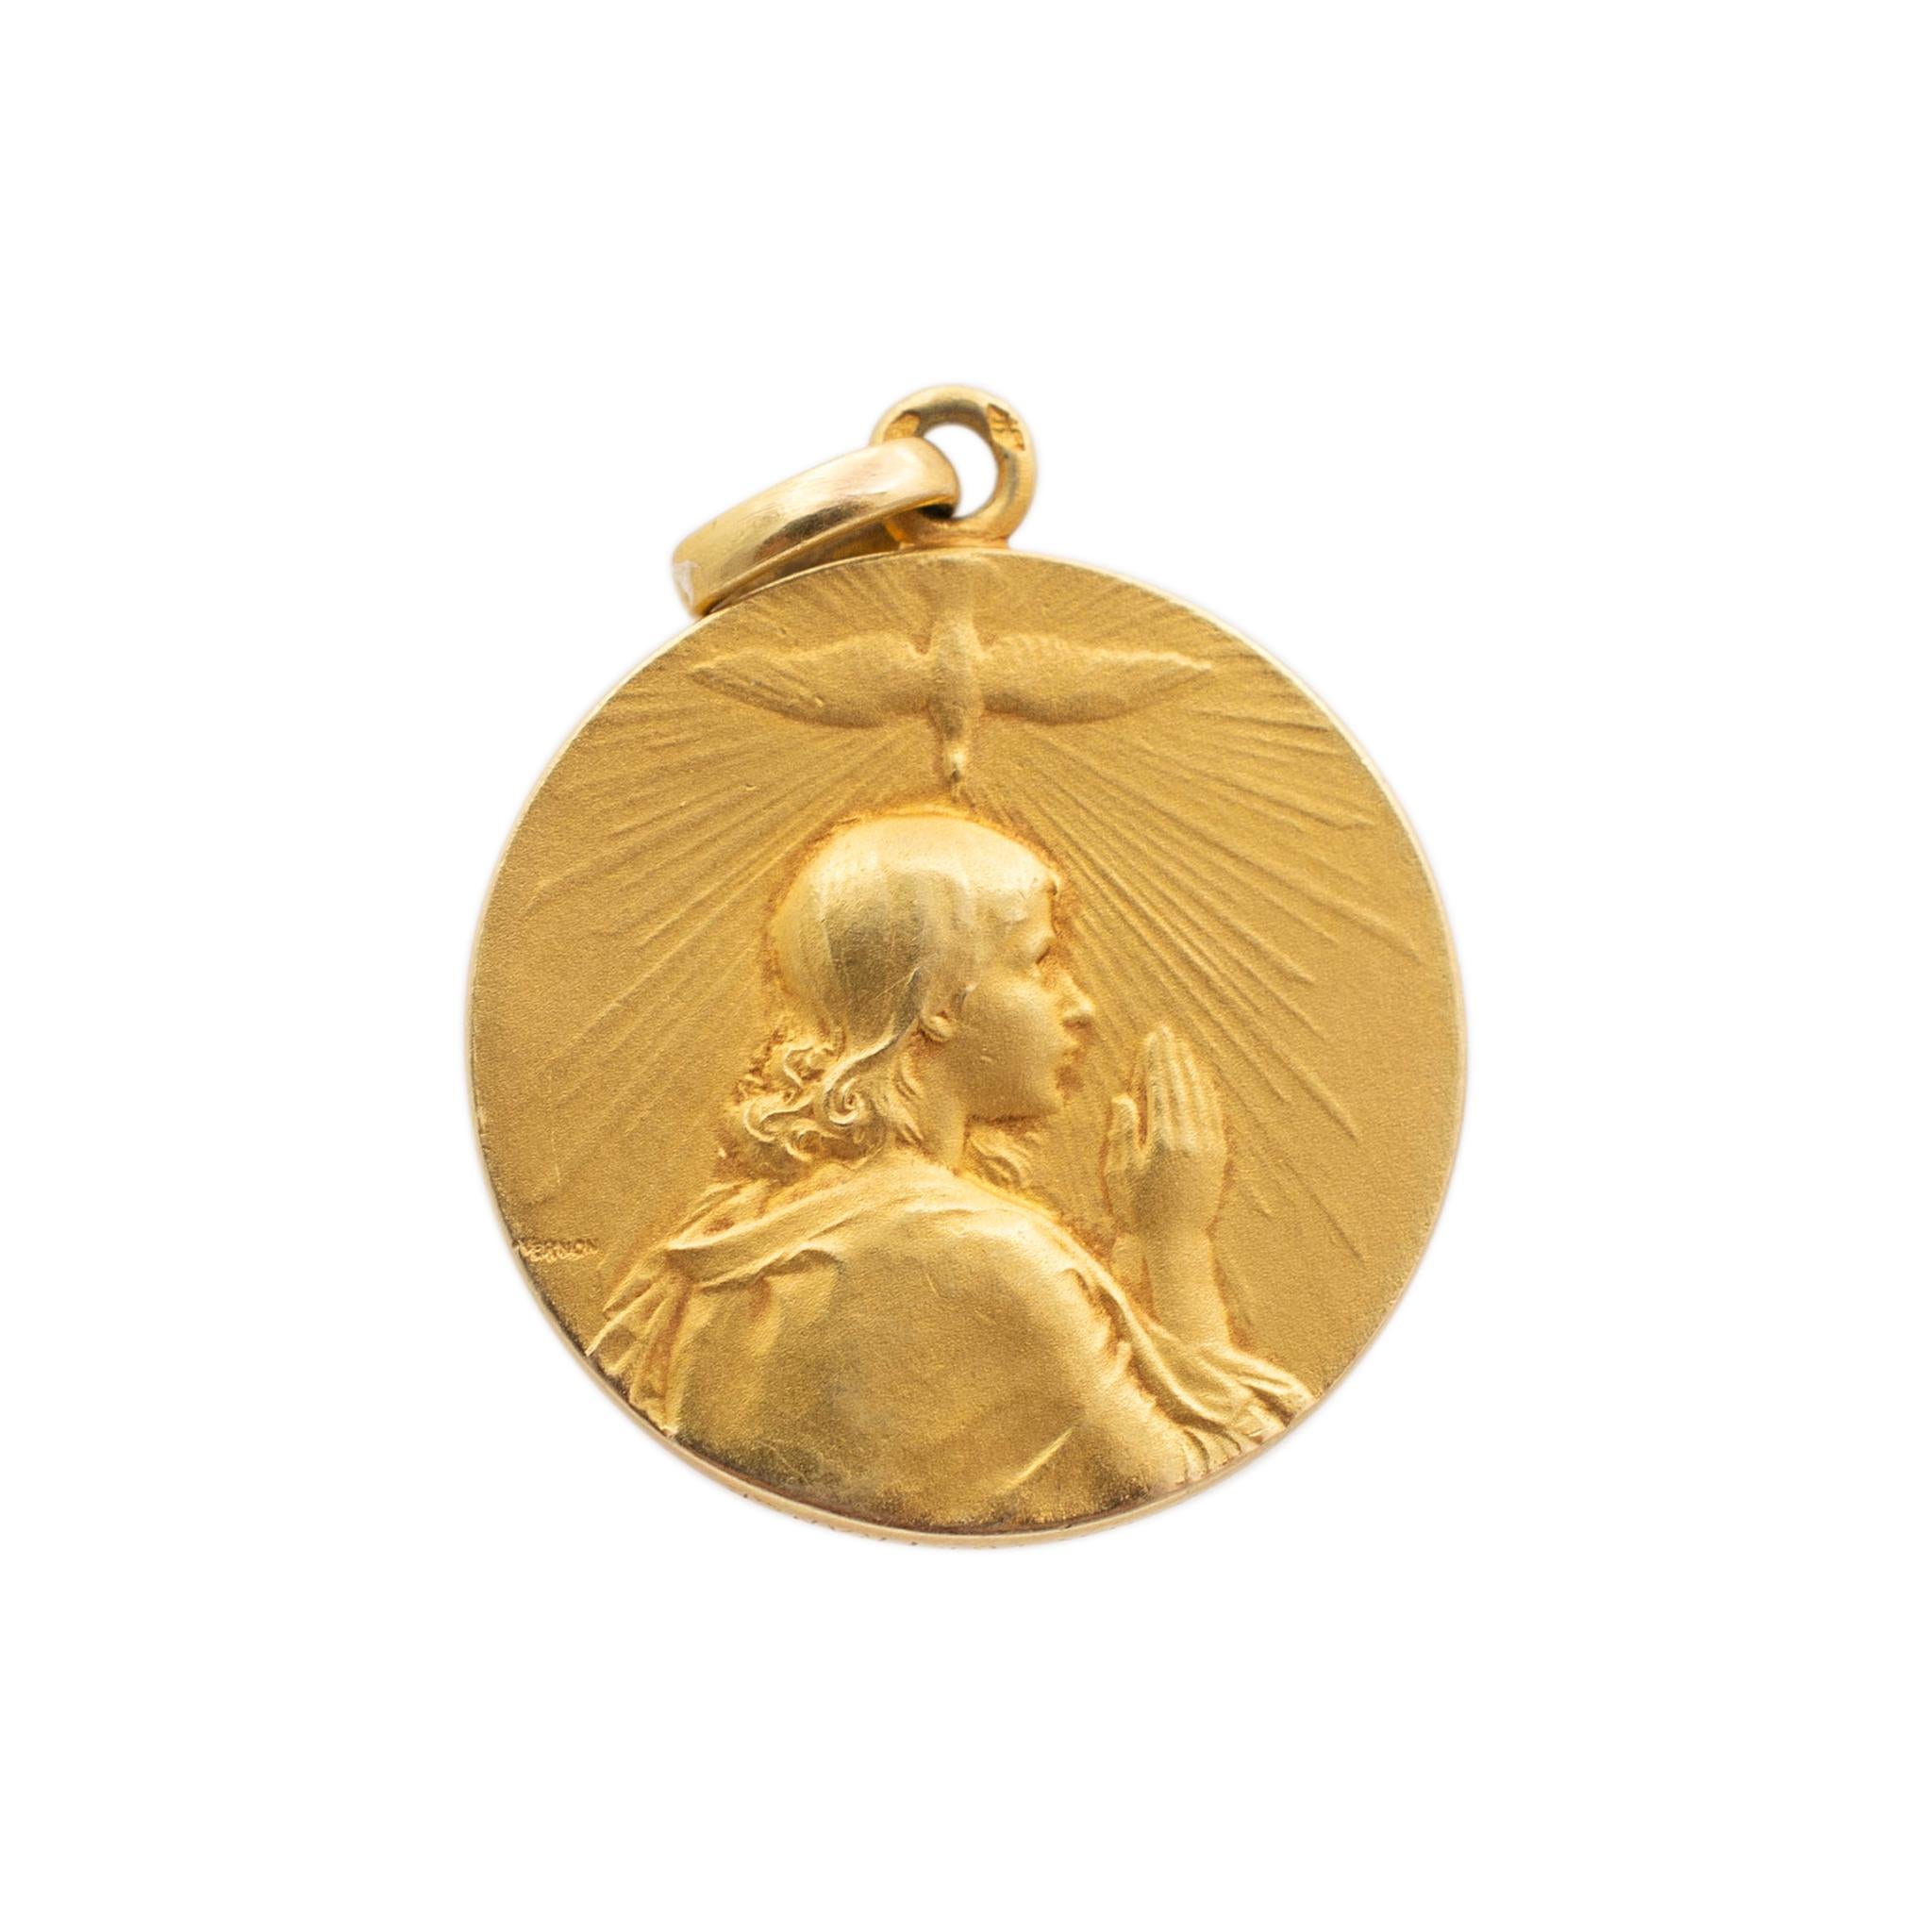 Marke: Cartier

Metall Typ: 18K Gelbgold

Dicke: 2,00 mm

Durchmesser: 22,80 mm

Gewicht: 10,25 Gramm

Religiöser Medaillon-Anhänger aus 18 Karat Gelbgold aus der Edwardianischen Zeit (1901-1920). Das Metall wurde getestet und es wurde festgestellt,